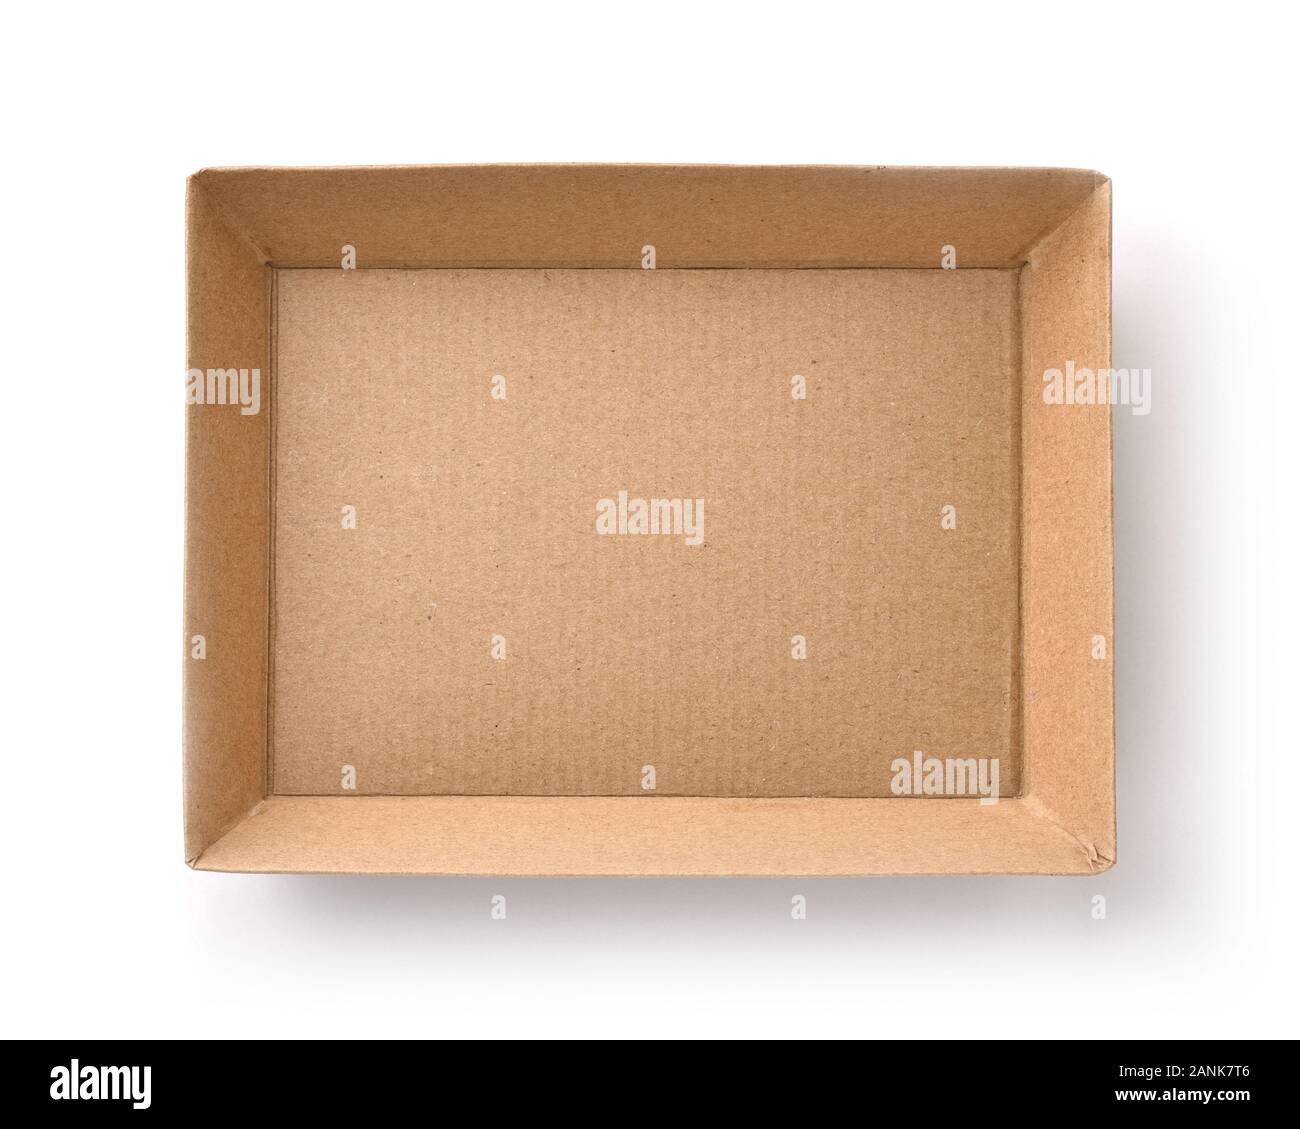 Vista superior de la caja de cartón craft vacío aislado en blanco Foto de stock